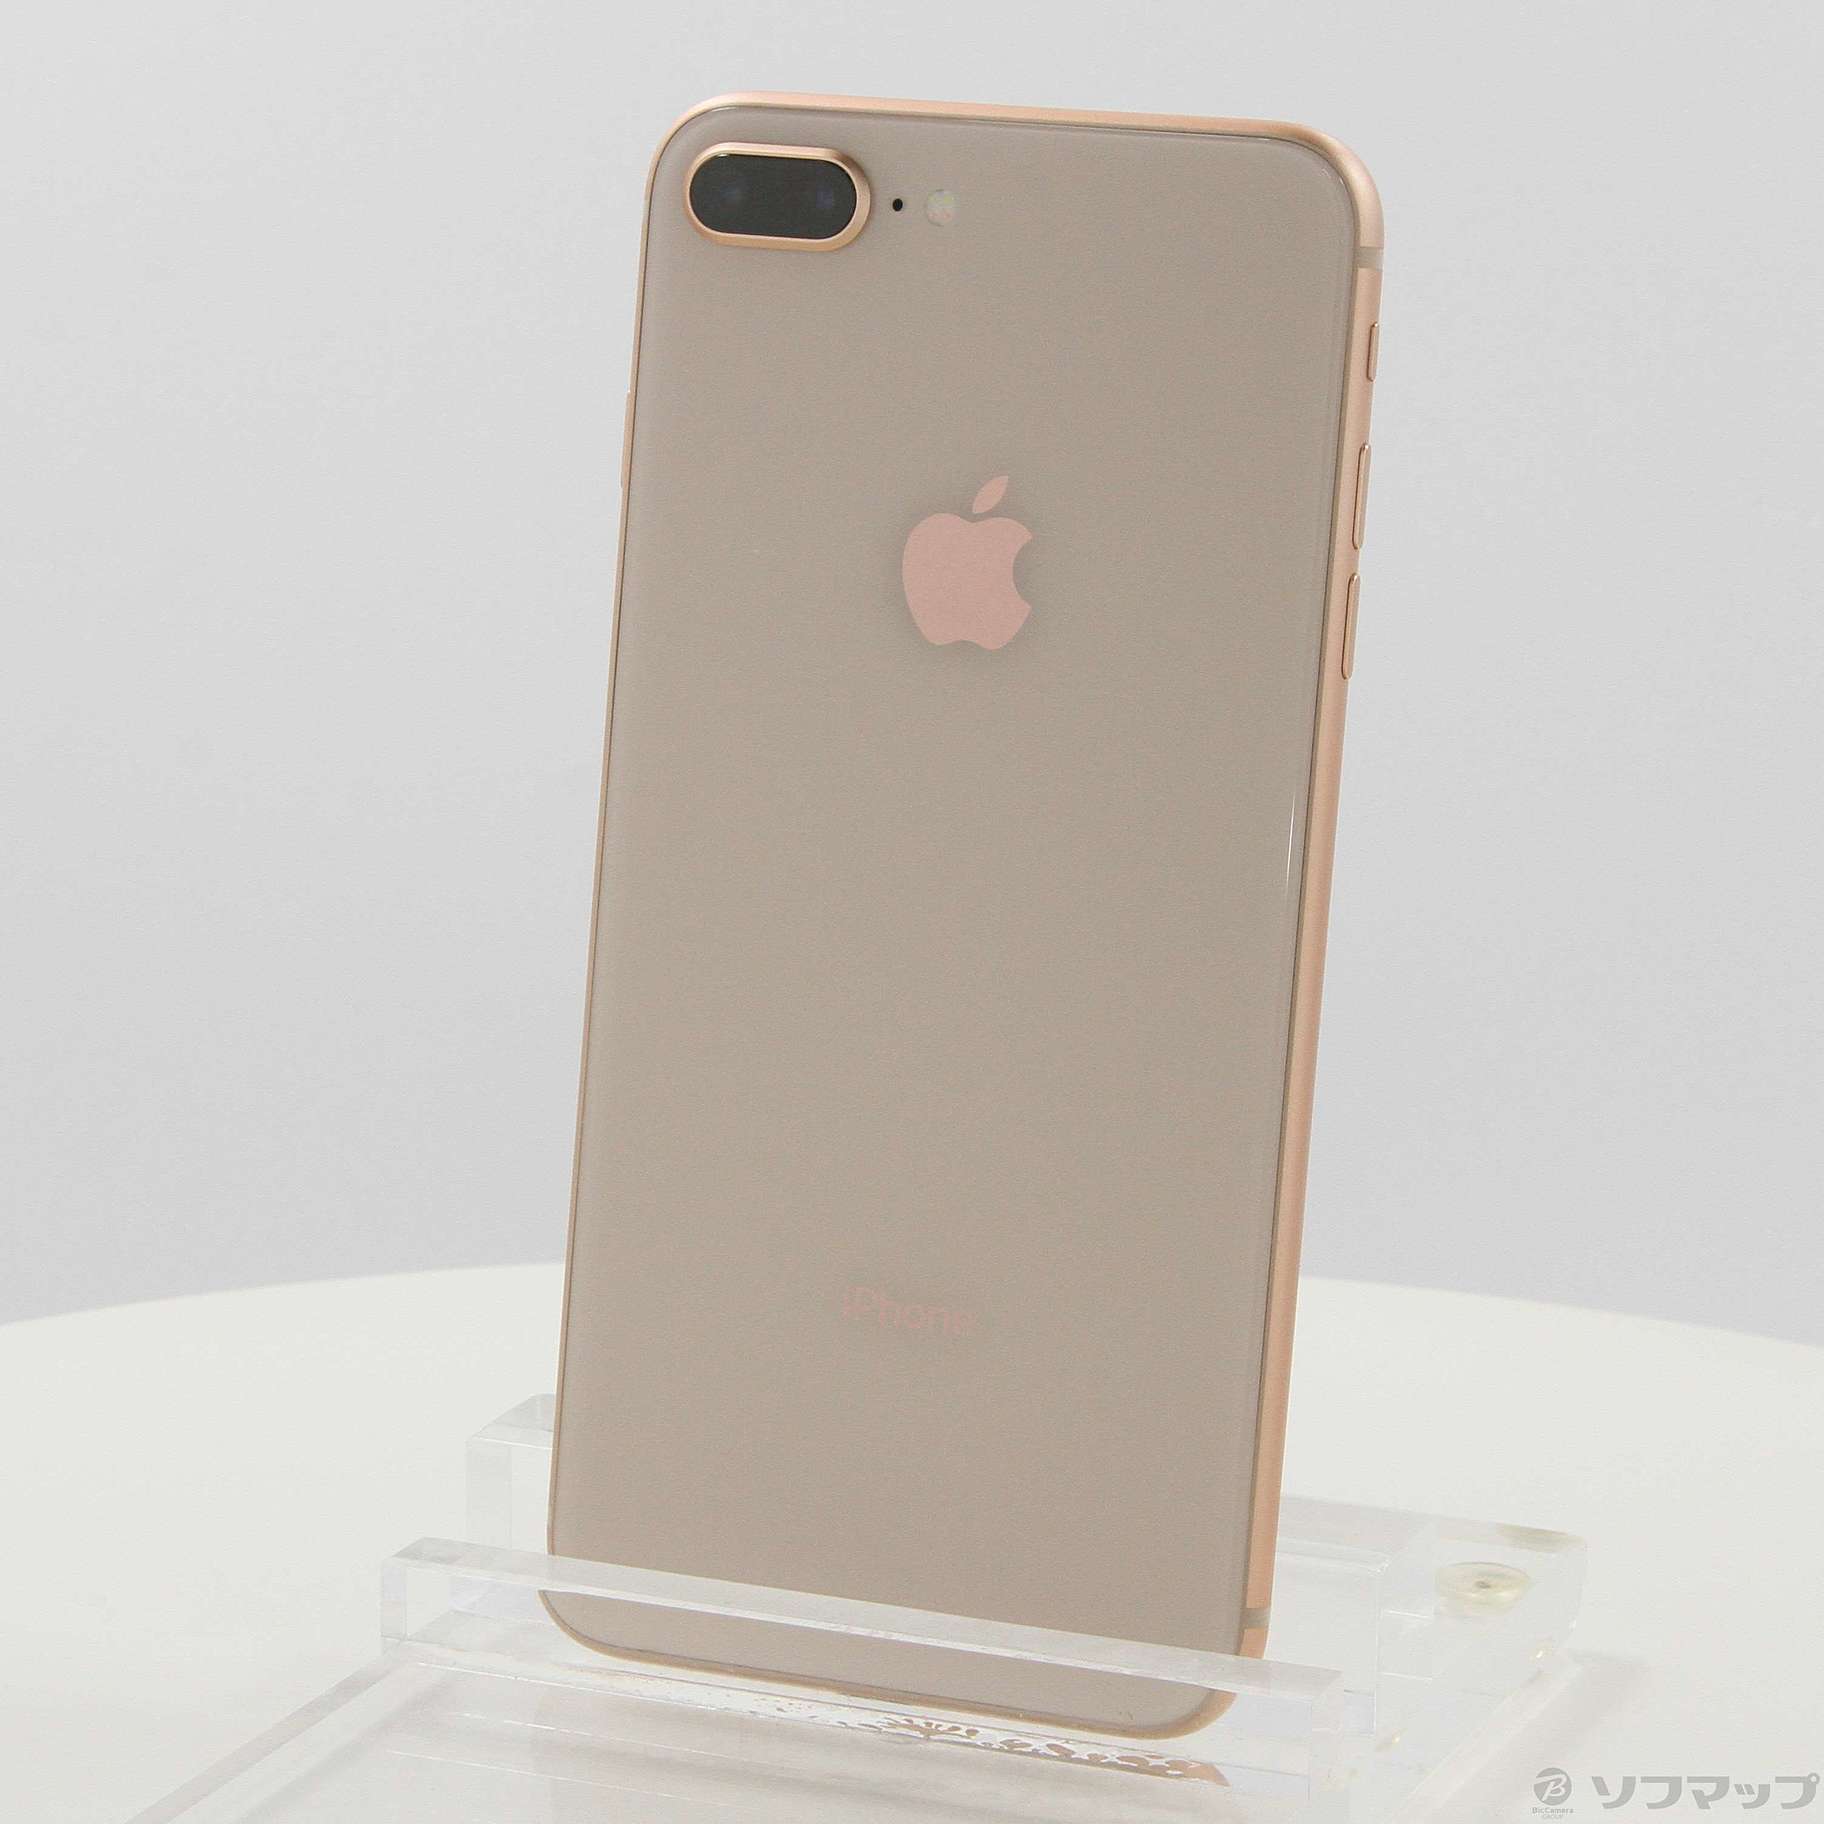 【低価HOT】iPhone8 Plus 64GB ゴールド SIMフリー スマートフォン本体